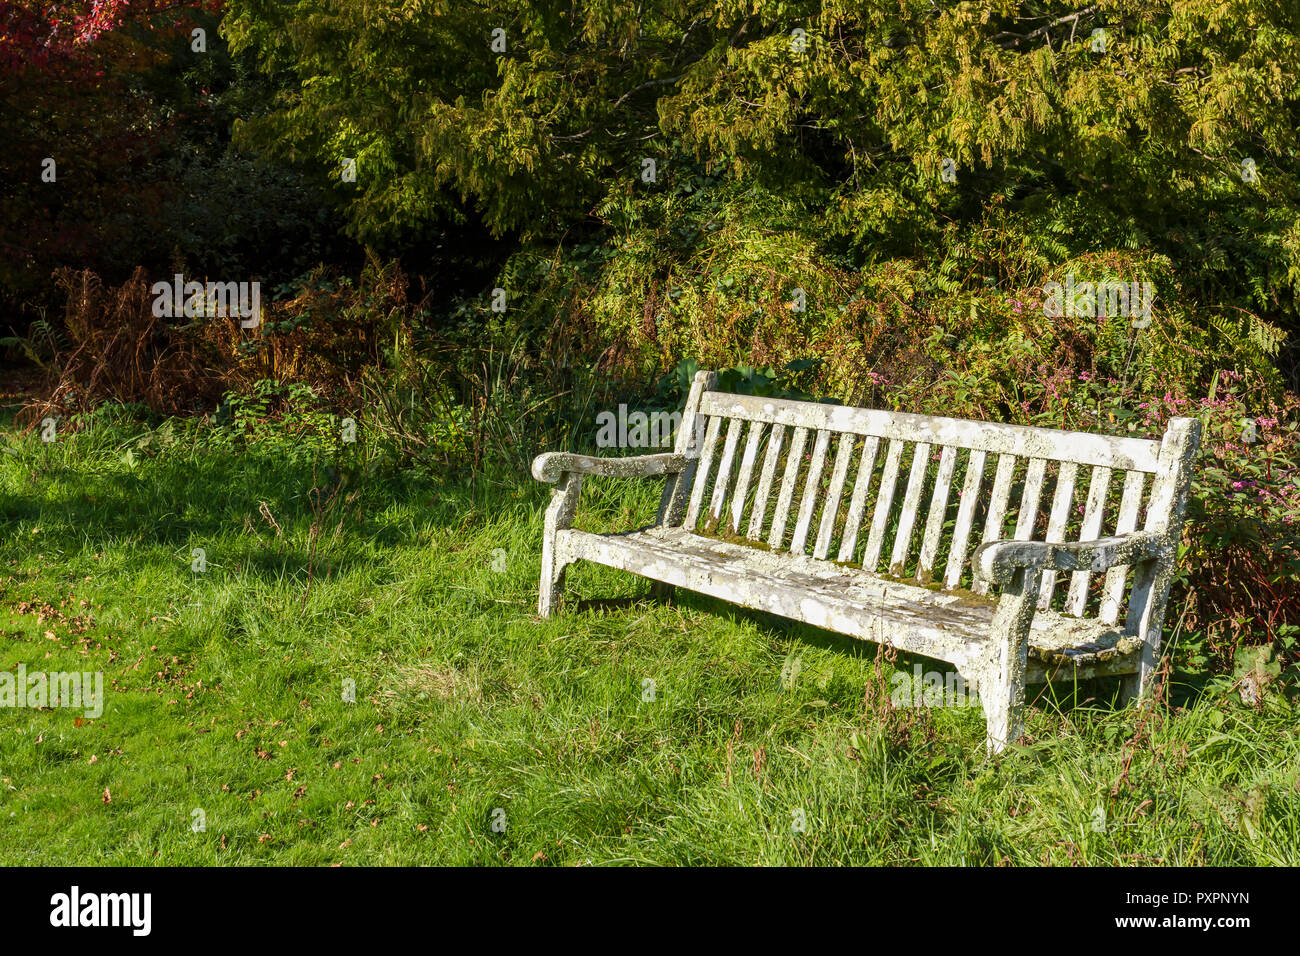 Svuotare panca in legno sull'erba da alberi e fogliame, luogo ideale dove sedersi e riposare in una tranquilla posizione, Regno Unito Foto Stock